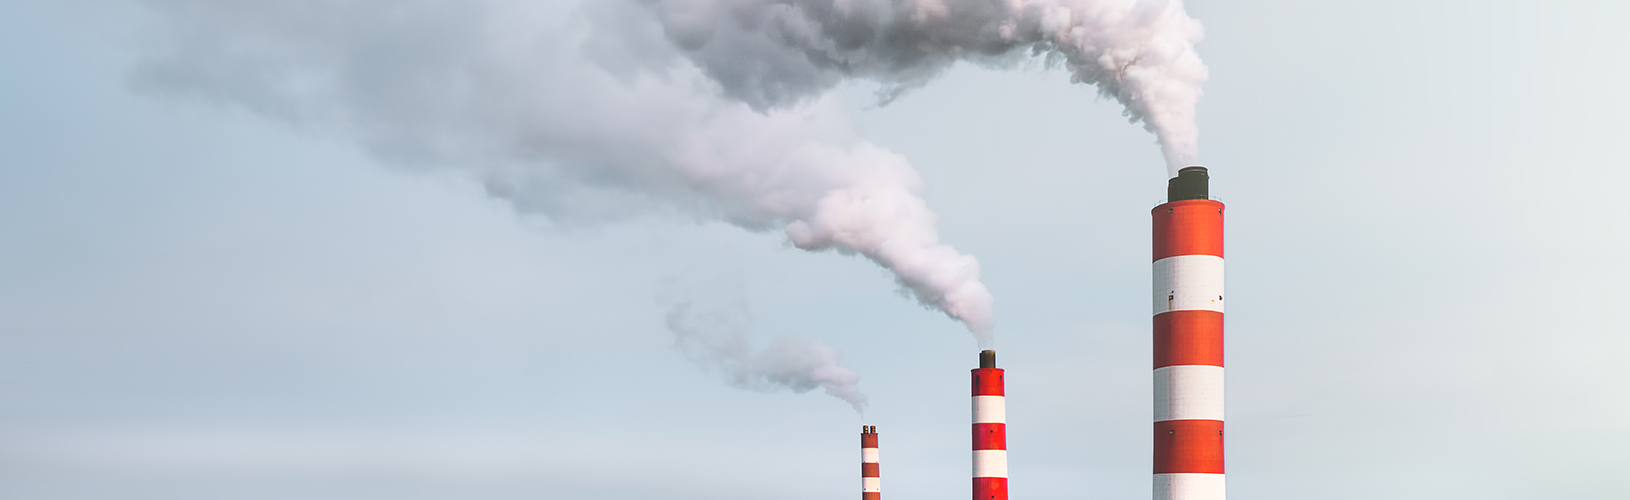 Измерение выбросов парниковых газов — важный шаг в вашей общей системе ESG.